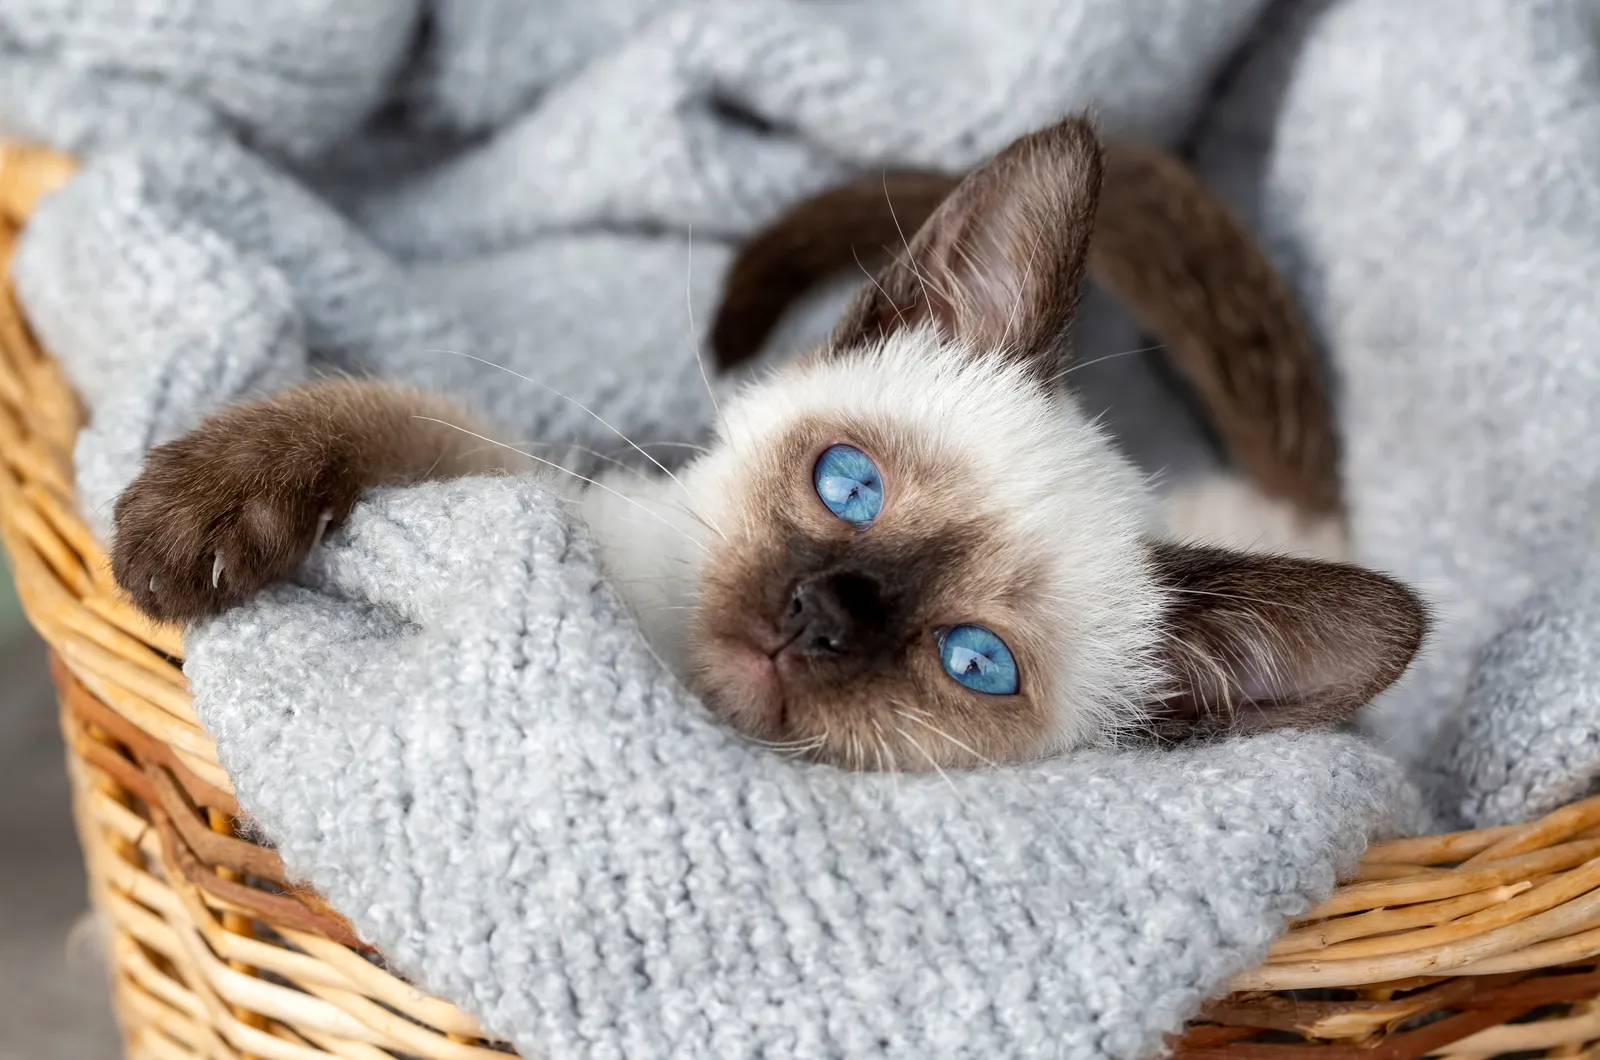 klein siamees kitten met blauwe ogen rustend in een mand met deken